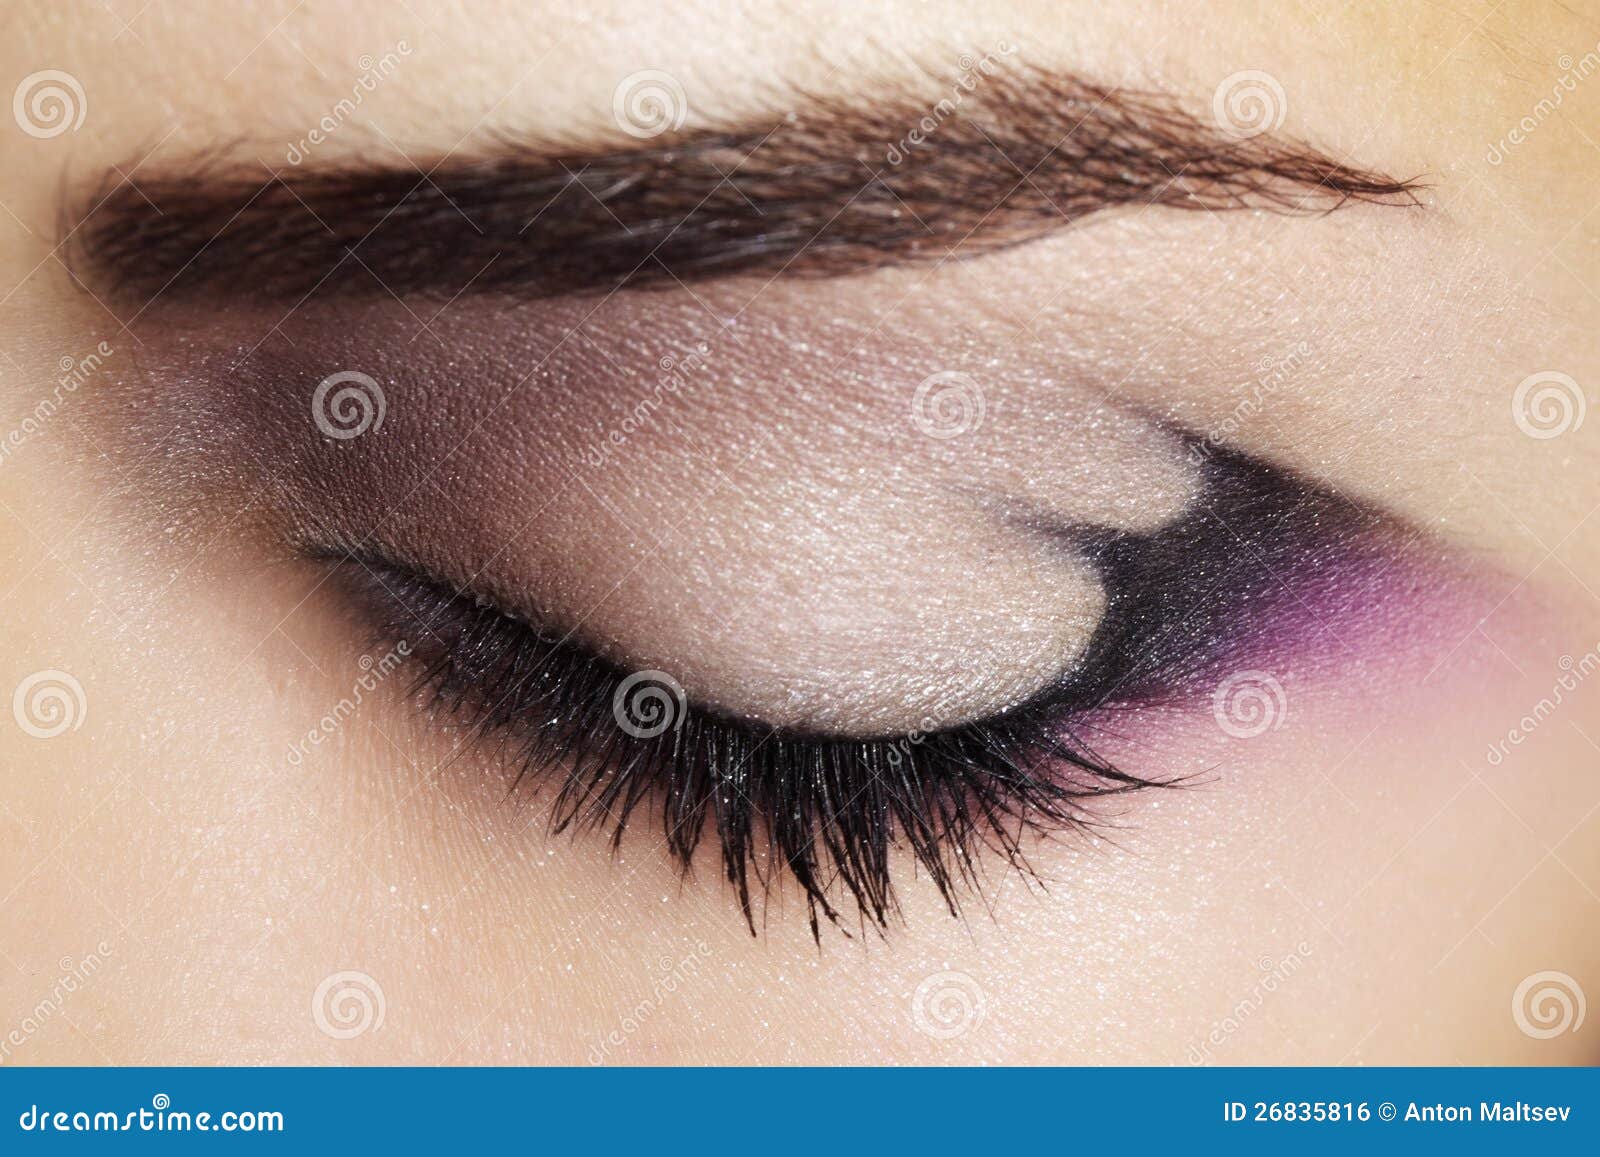 purple eye makeup stock photo. image of eyeshadows, girl